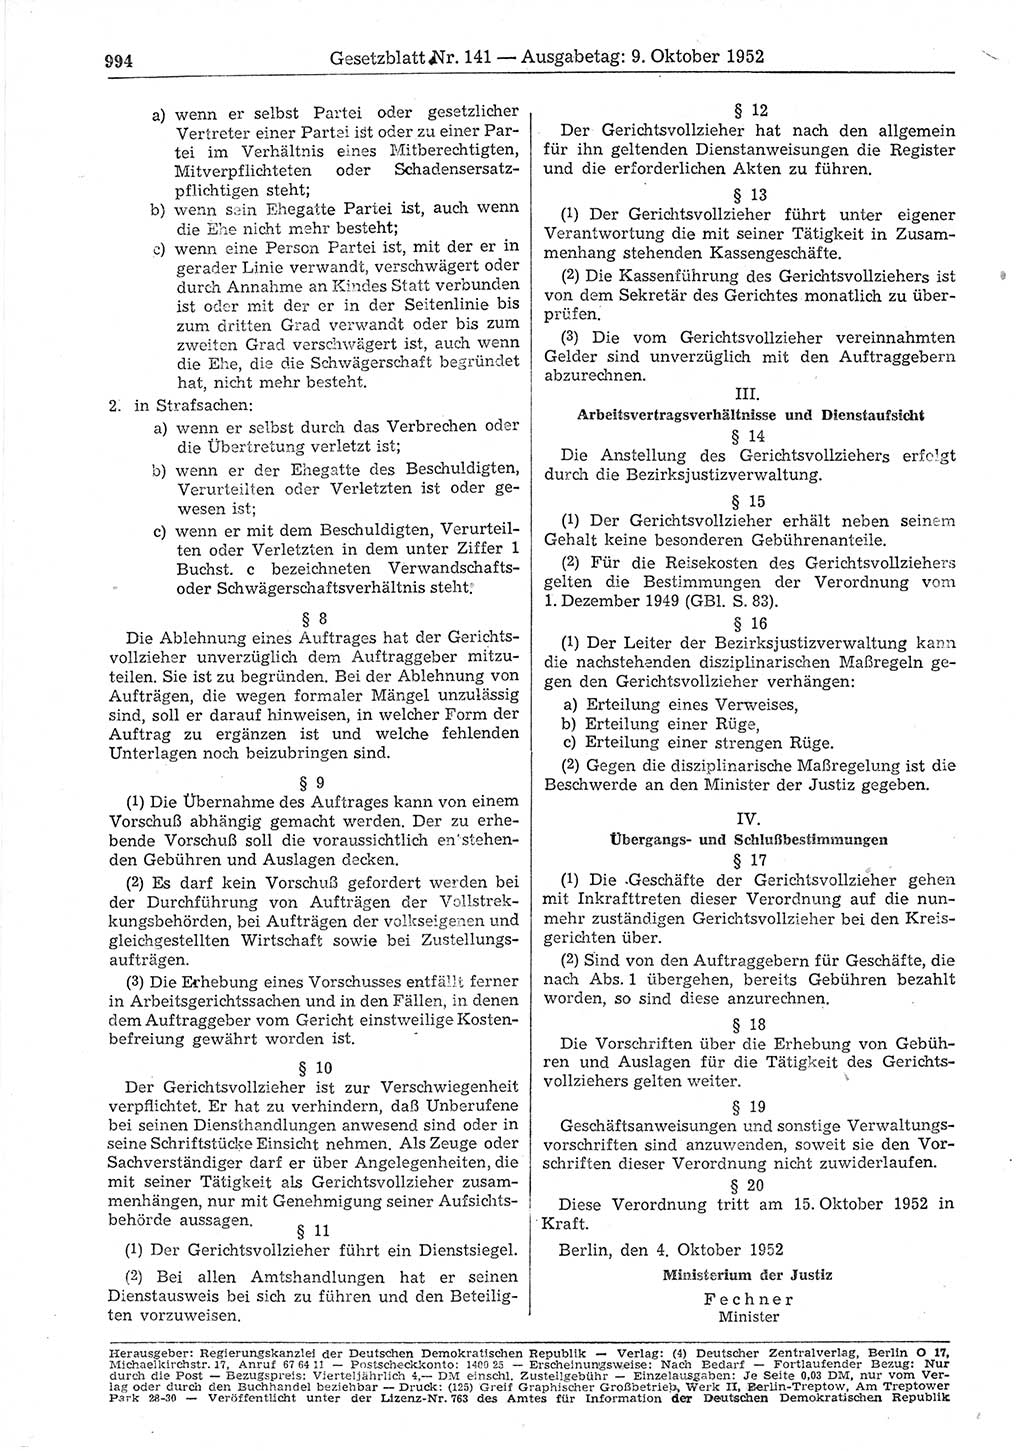 Gesetzblatt (GBl.) der Deutschen Demokratischen Republik (DDR) 1952, Seite 994 (GBl. DDR 1952, S. 994)